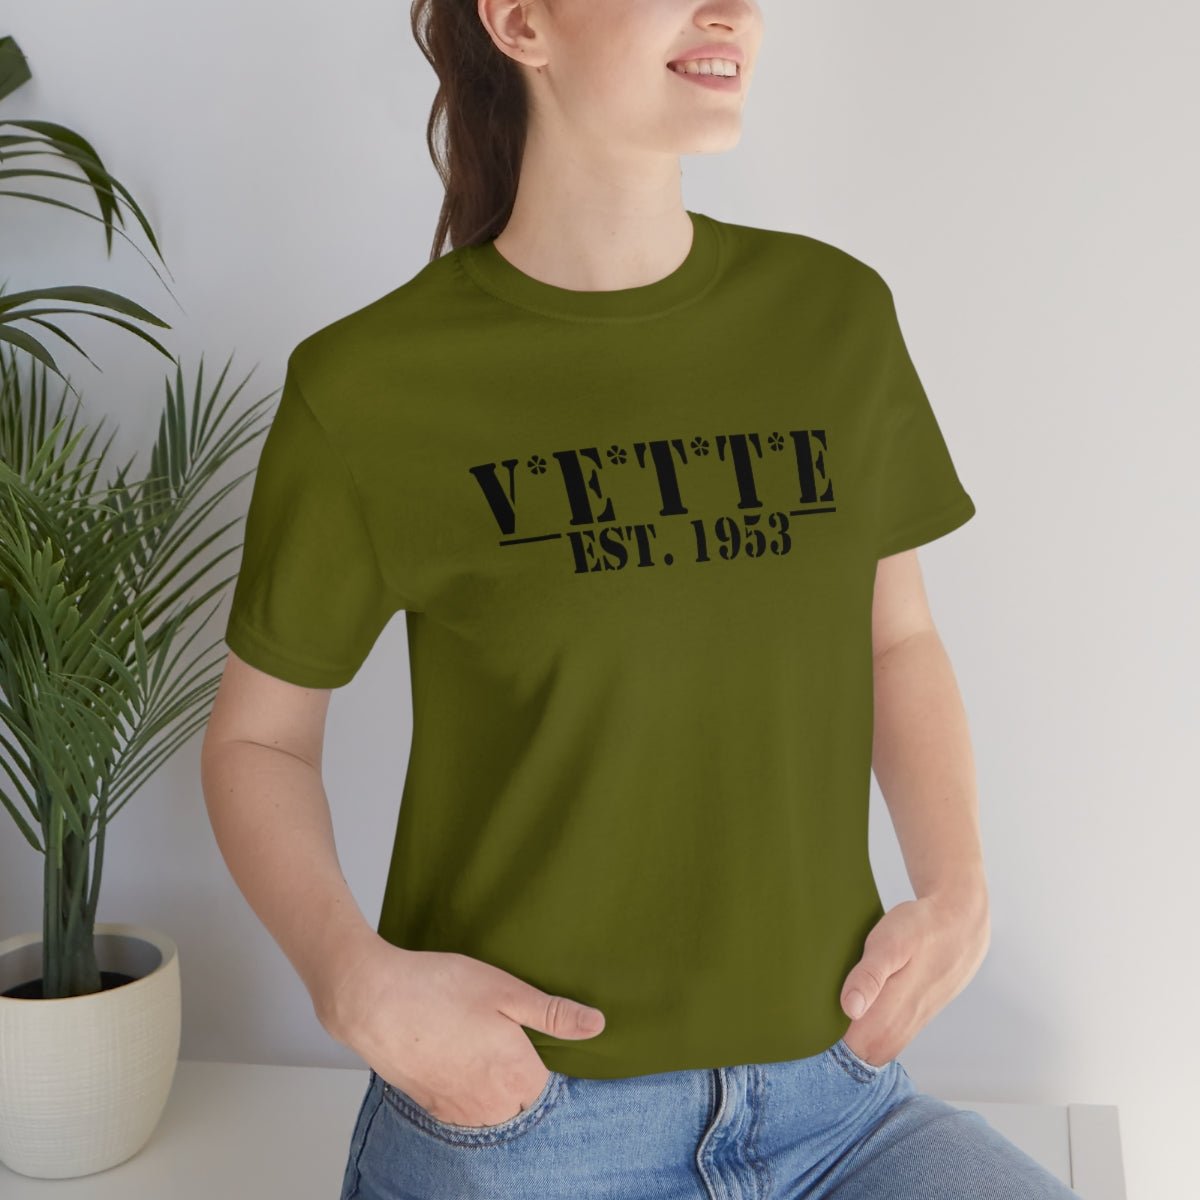 V*E*T*T*E Army T-Shirt - Vette1 - Misc. Men's T-Shirts